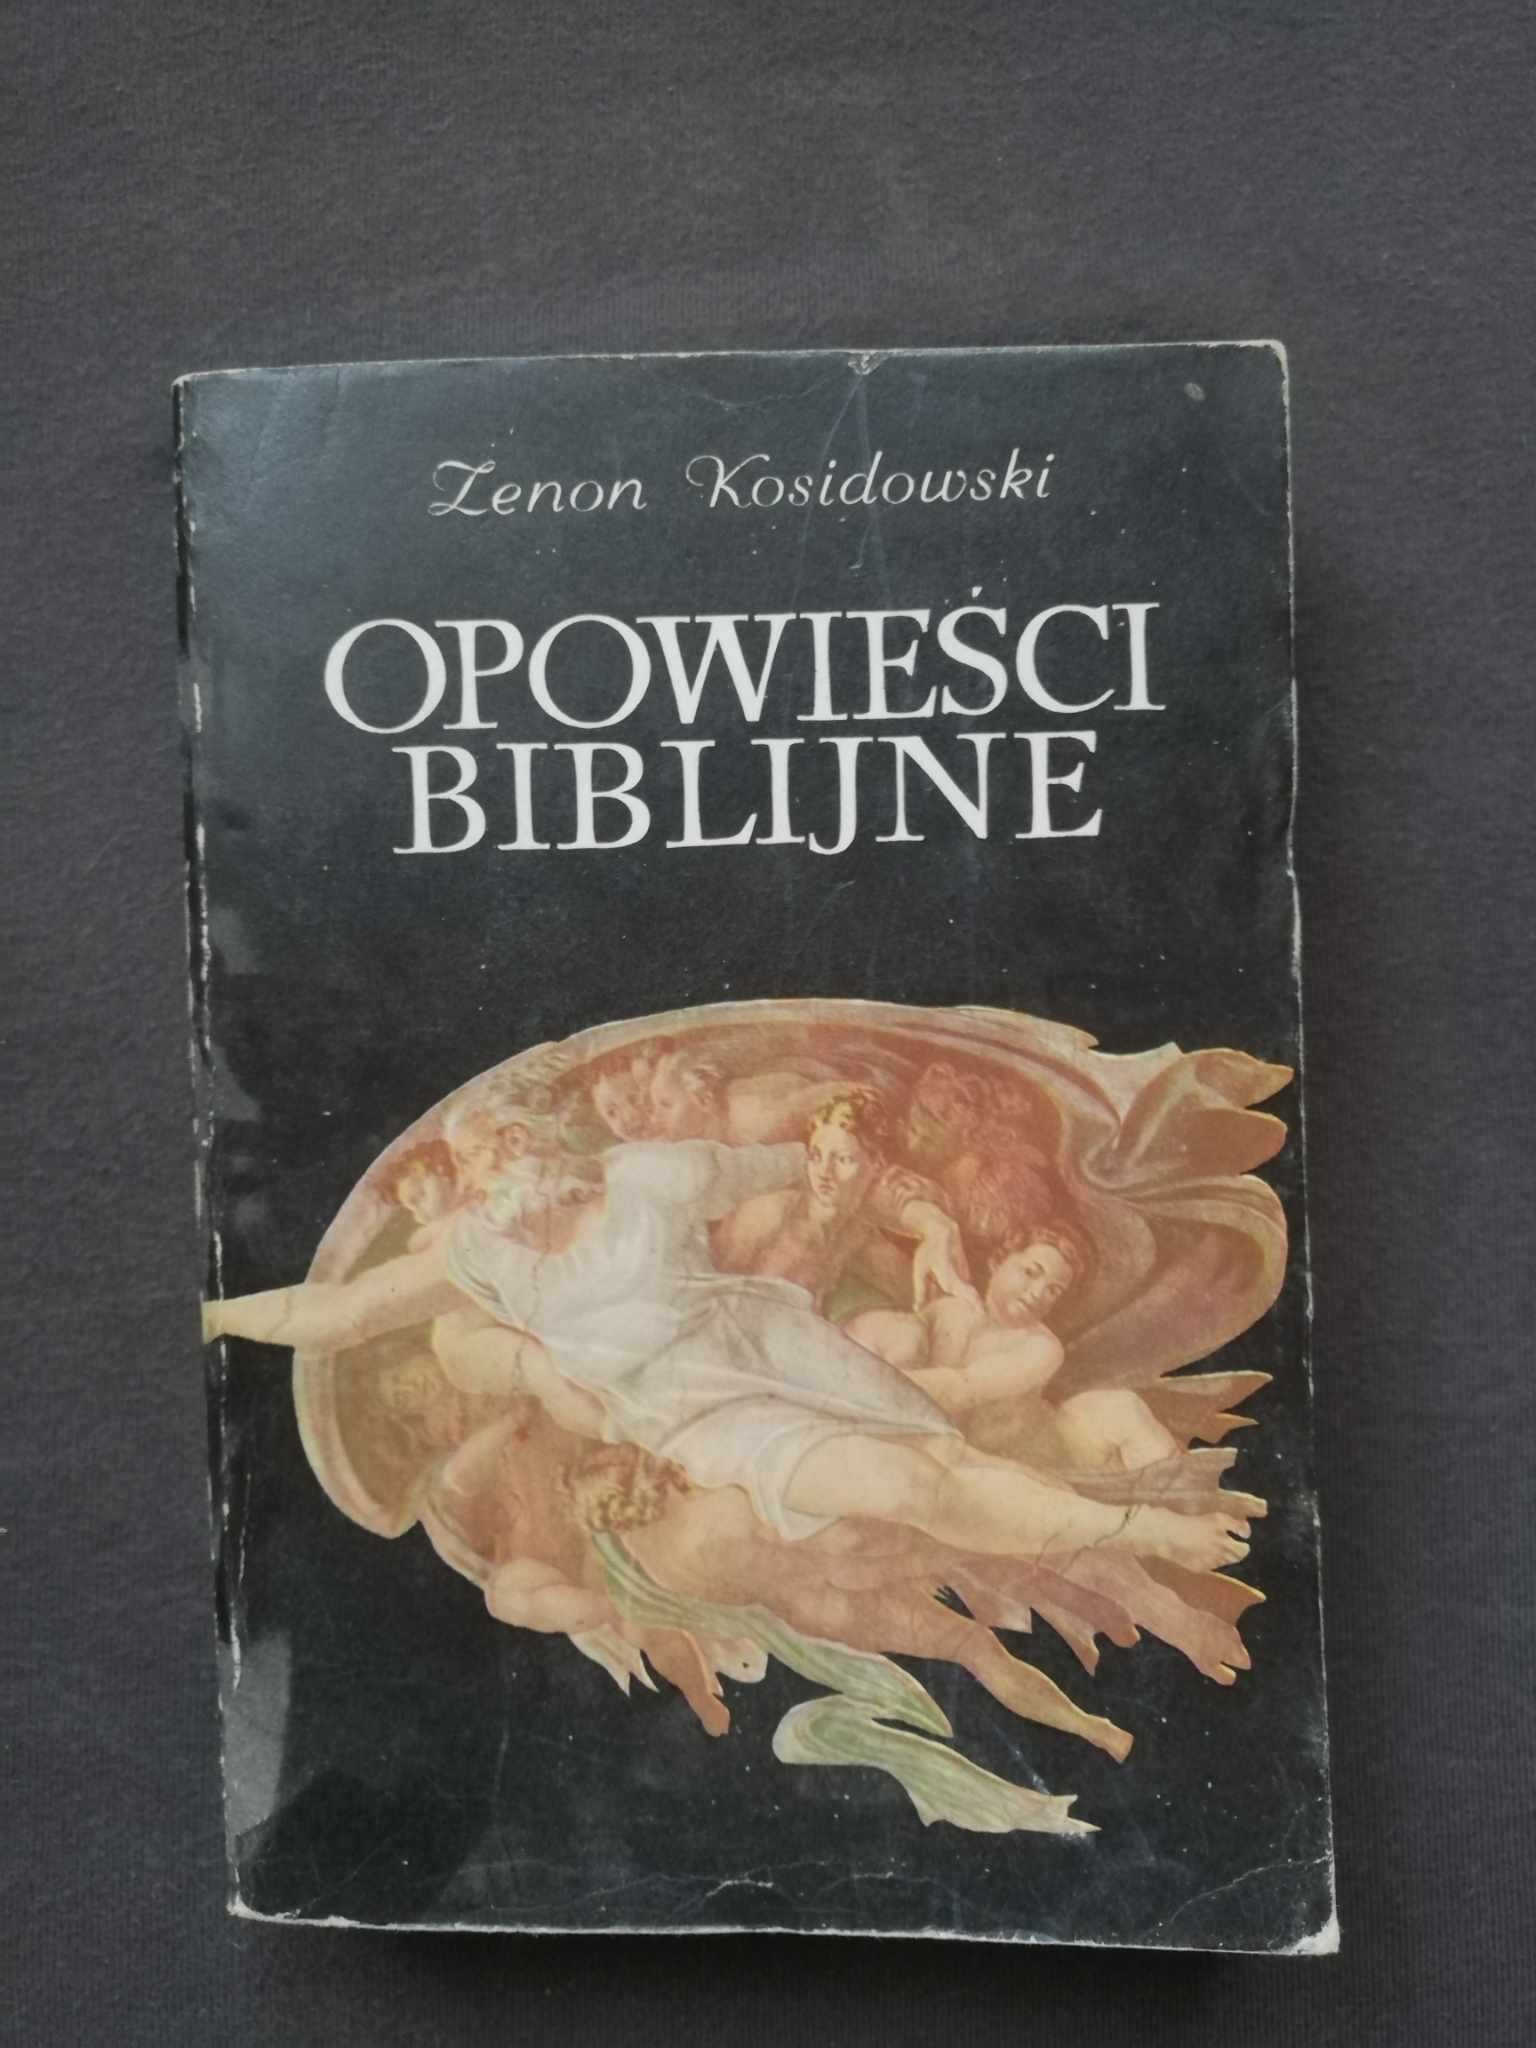 Opowieści biblijne, Z. Kosidowski